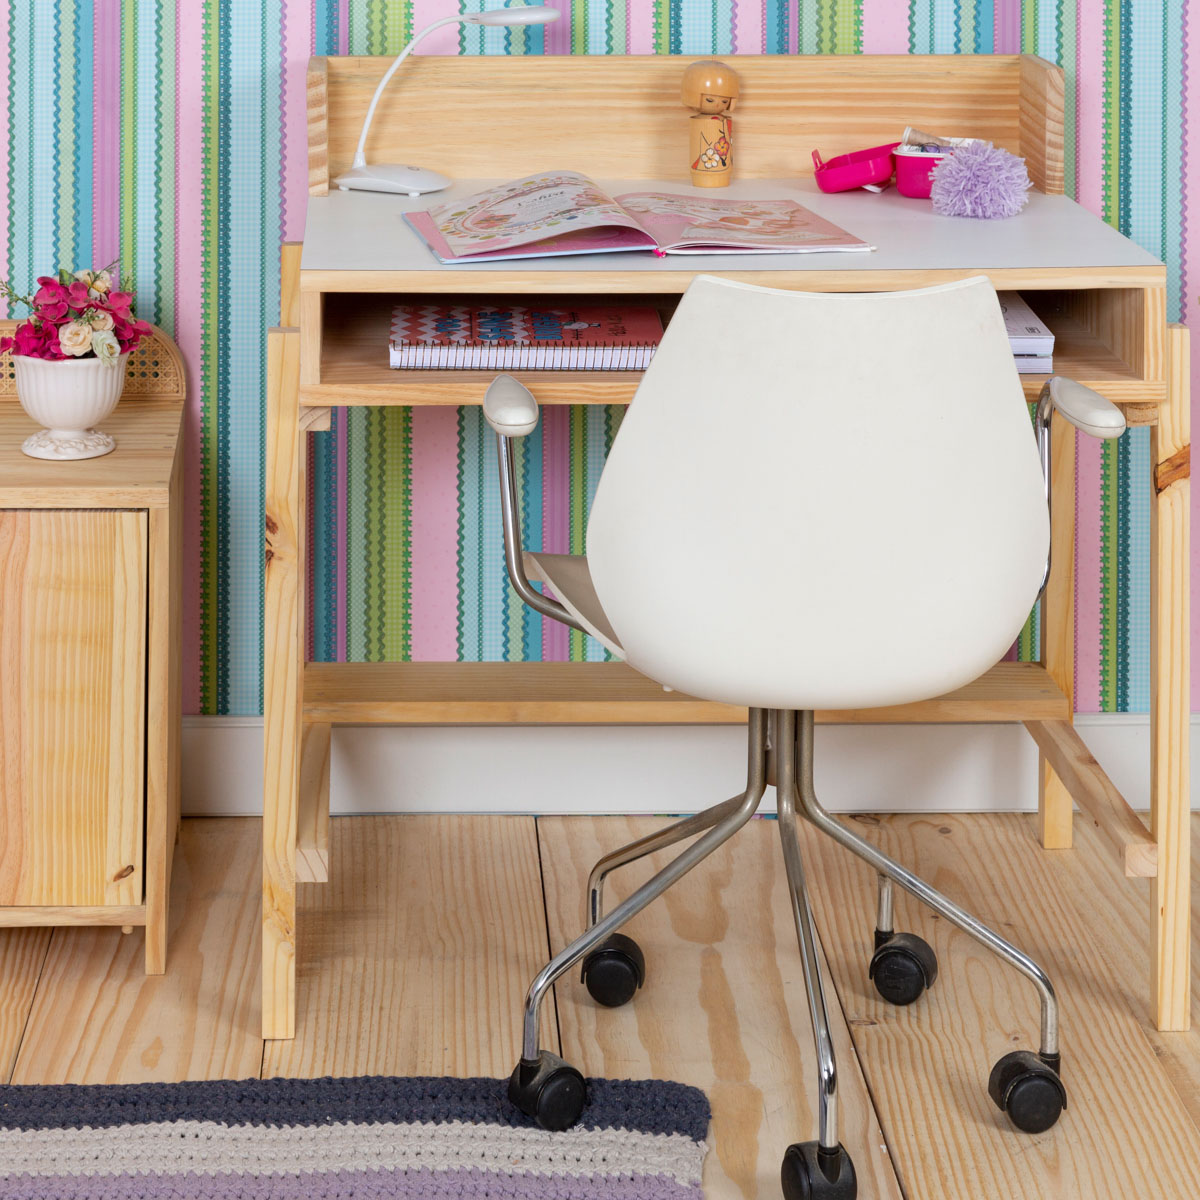 Escrivaninha Tudi de chão. Uma escrivaninha com design moderno e diferente, tampo colorido. Perfeito para qualquer quarto. Aqui com tampo branco.